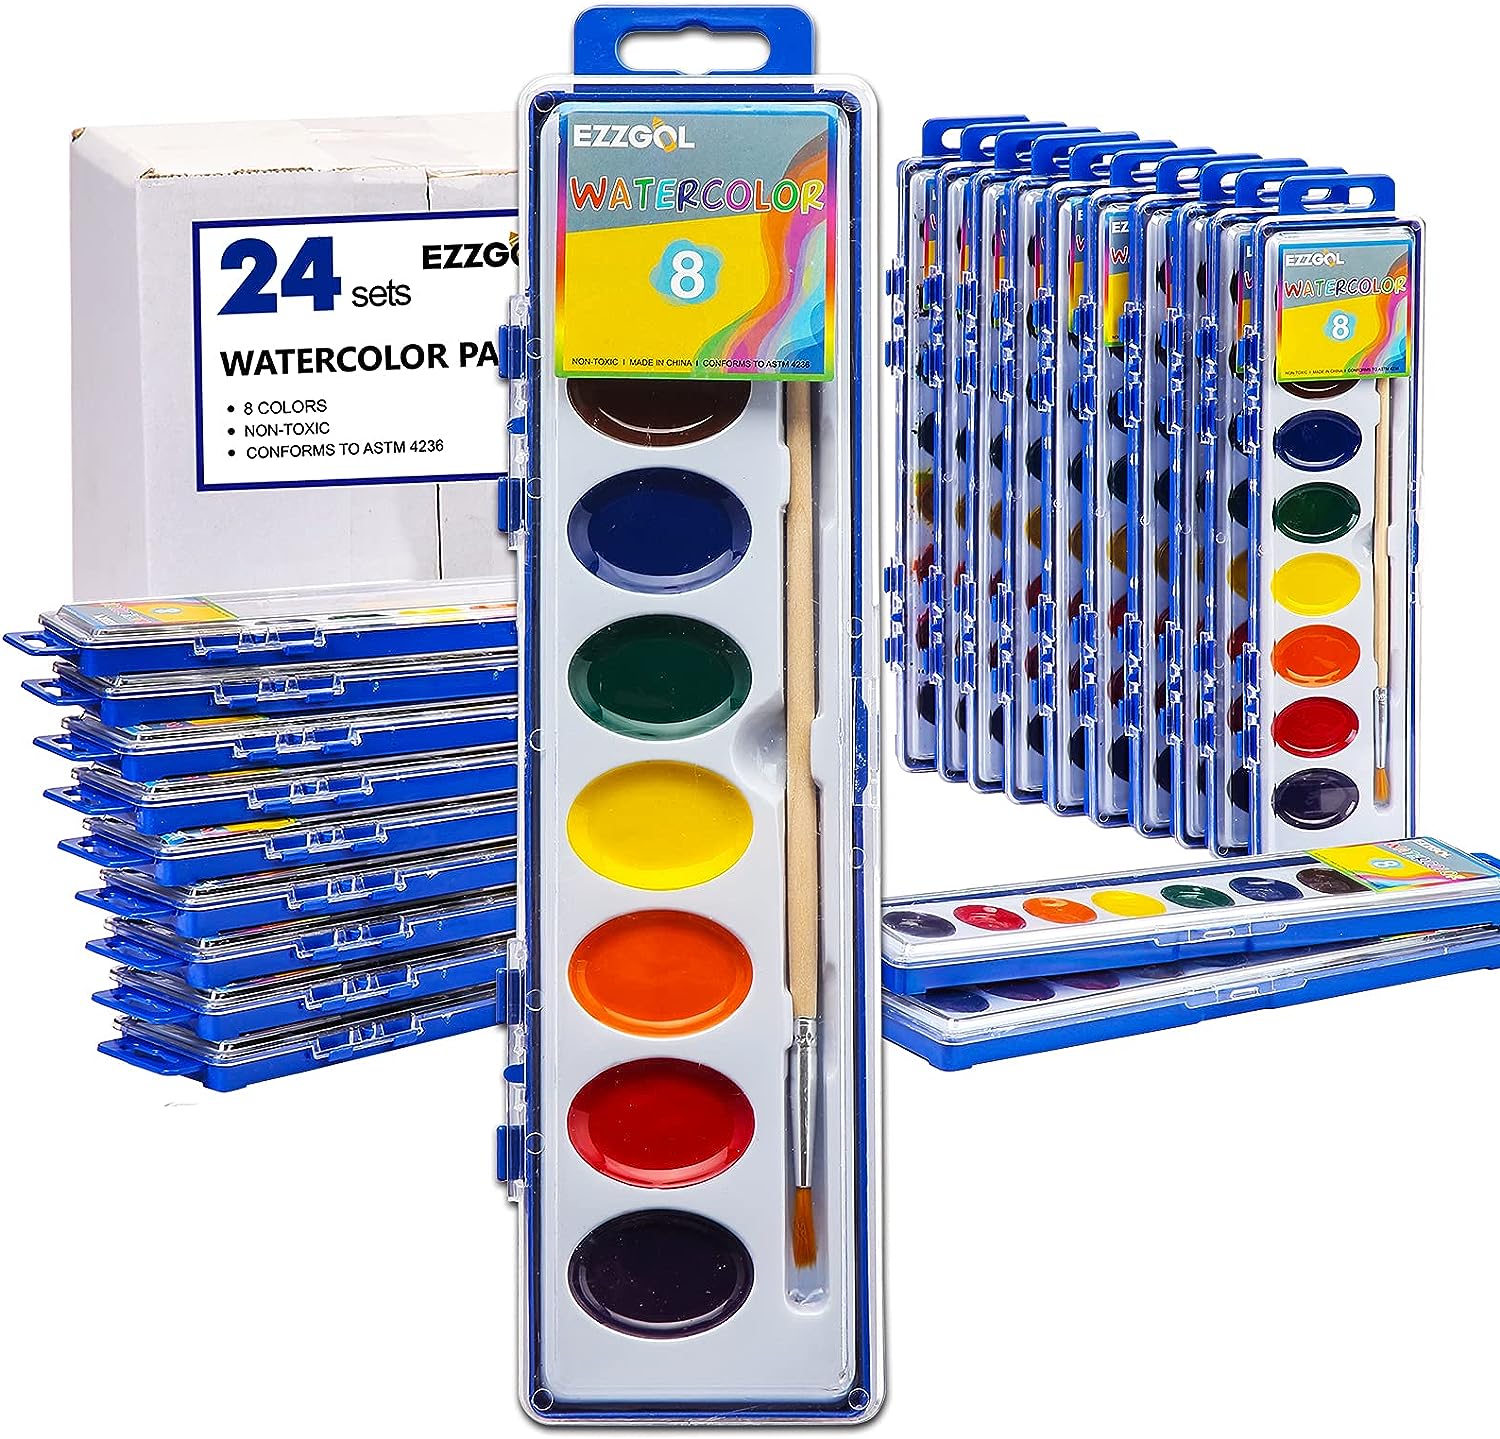 Ezzgol Watercolor Paint Sets Bulk Pack of 24, 8 Colors [...]